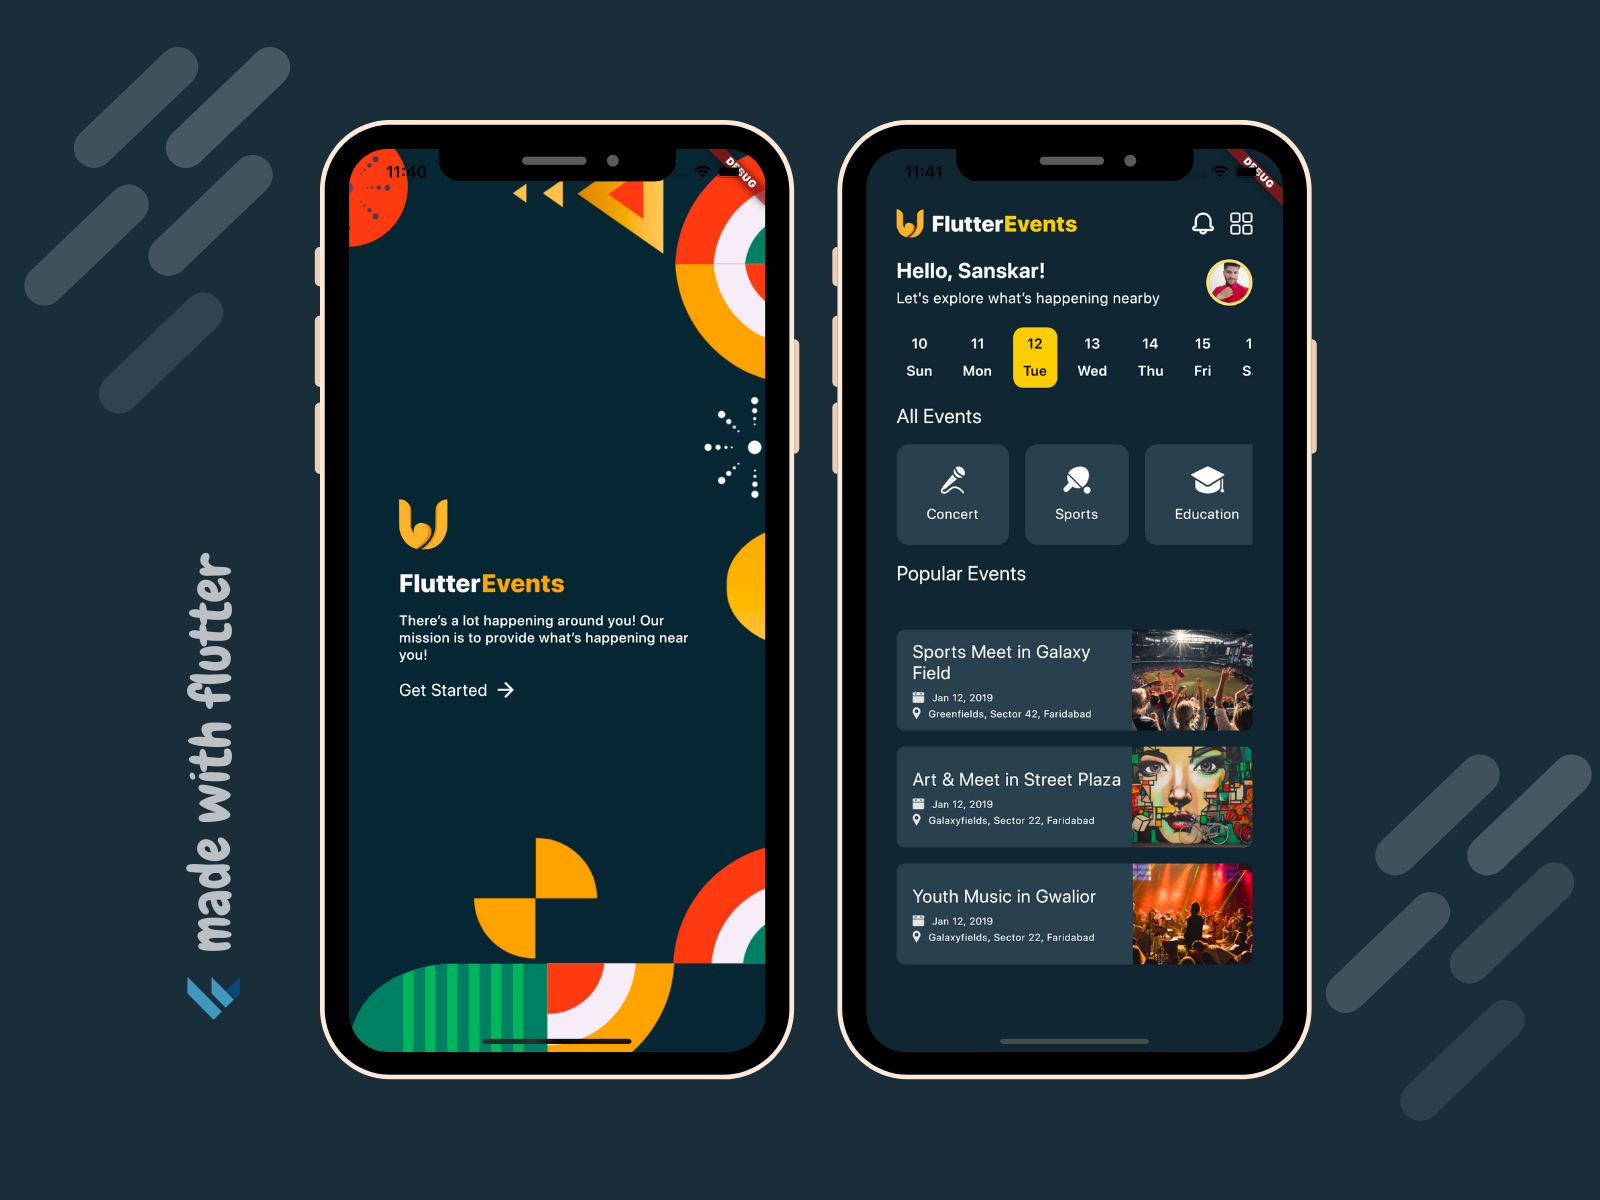 Flutter Events App UI Design dribble by Sanskar Tiwari on Dribbble